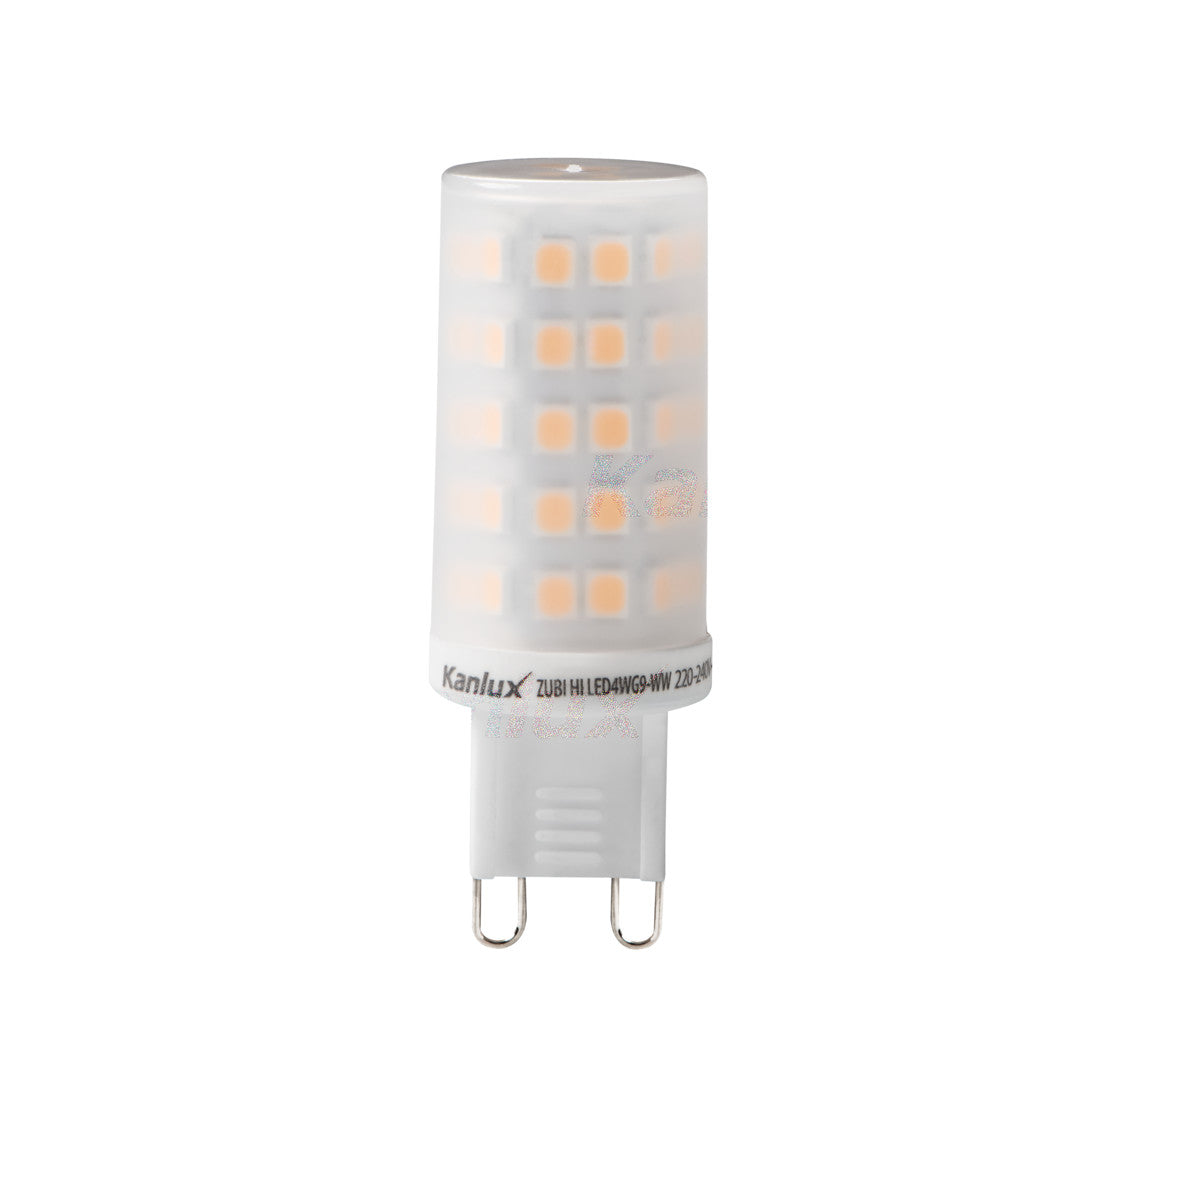 Kanlux ZUBI HI LED 4W G9 Warm White Light Bulb Lamp